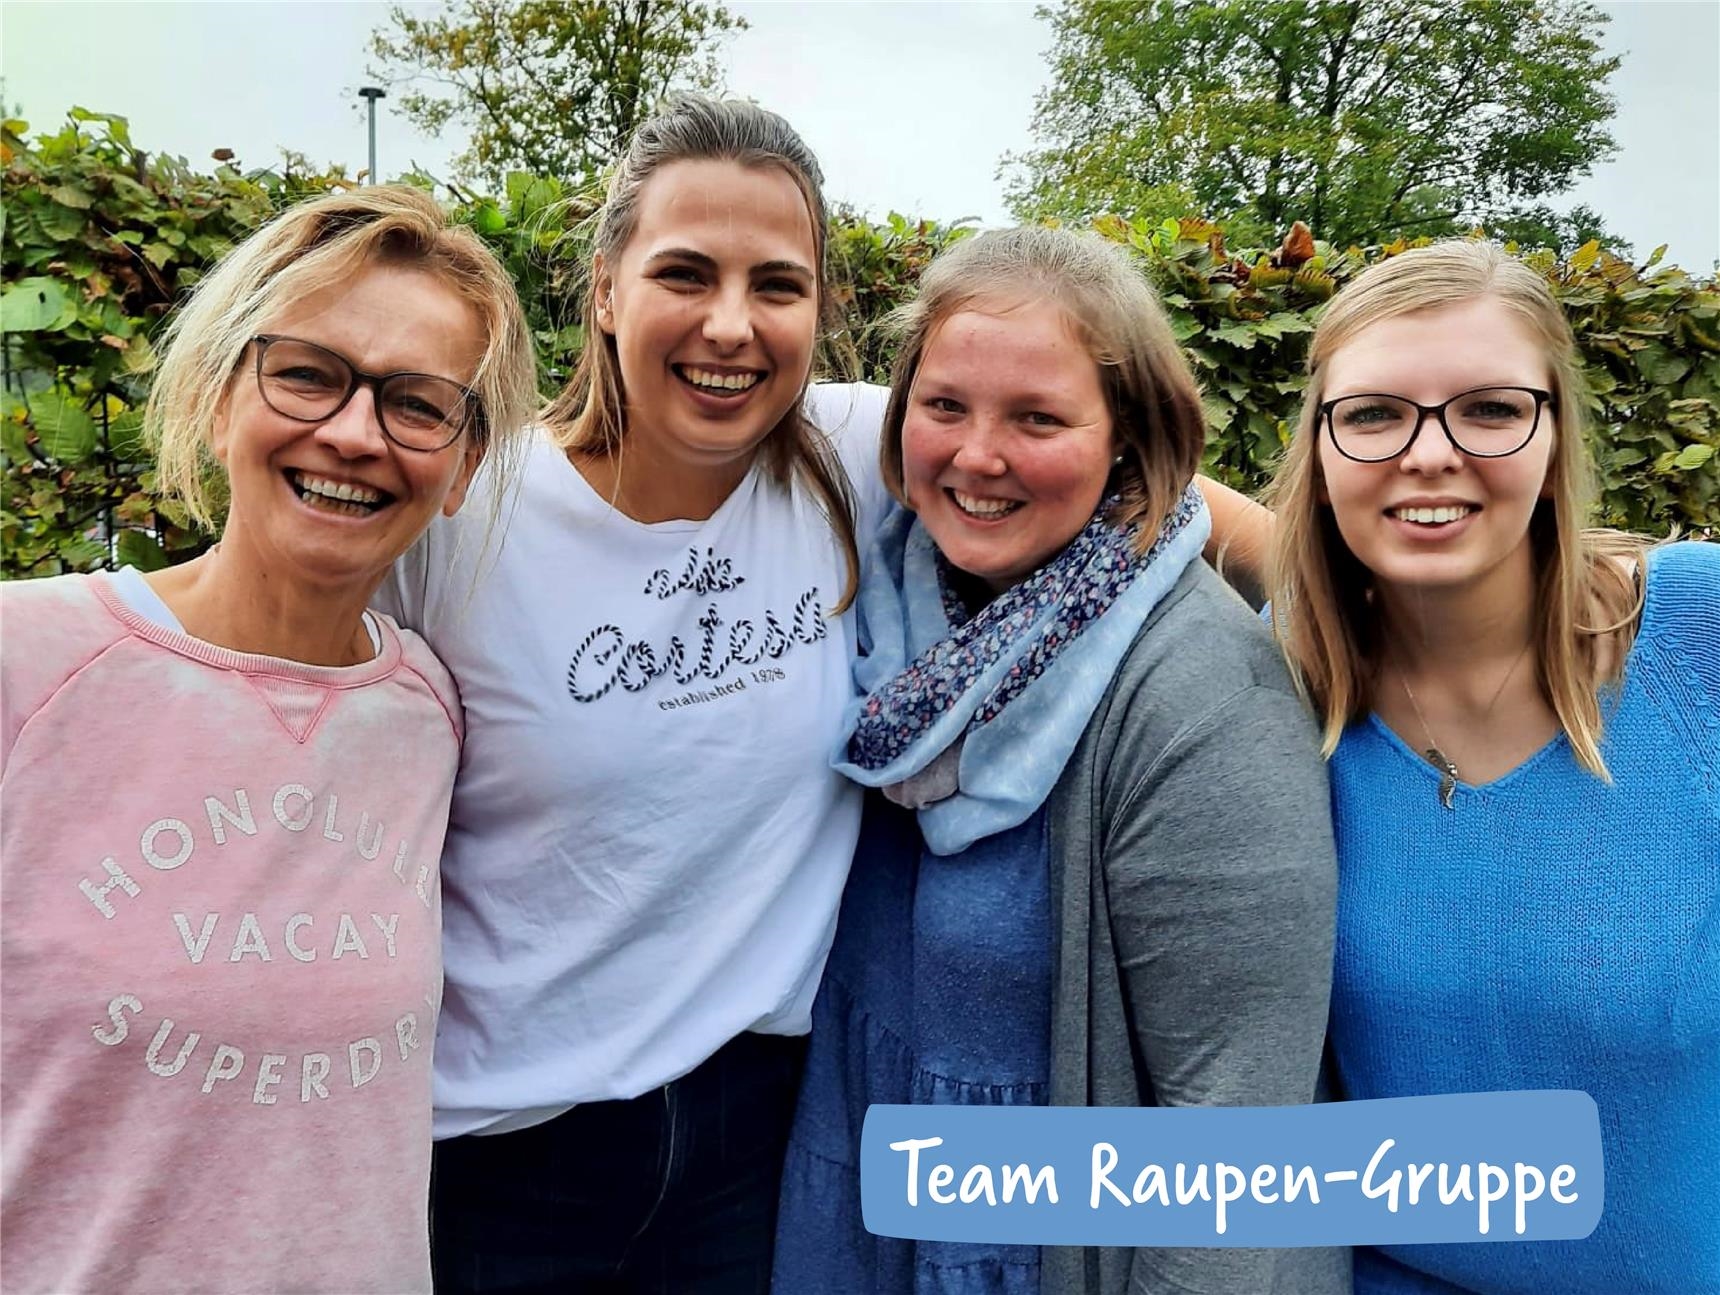 Team Raupen-Gruppe